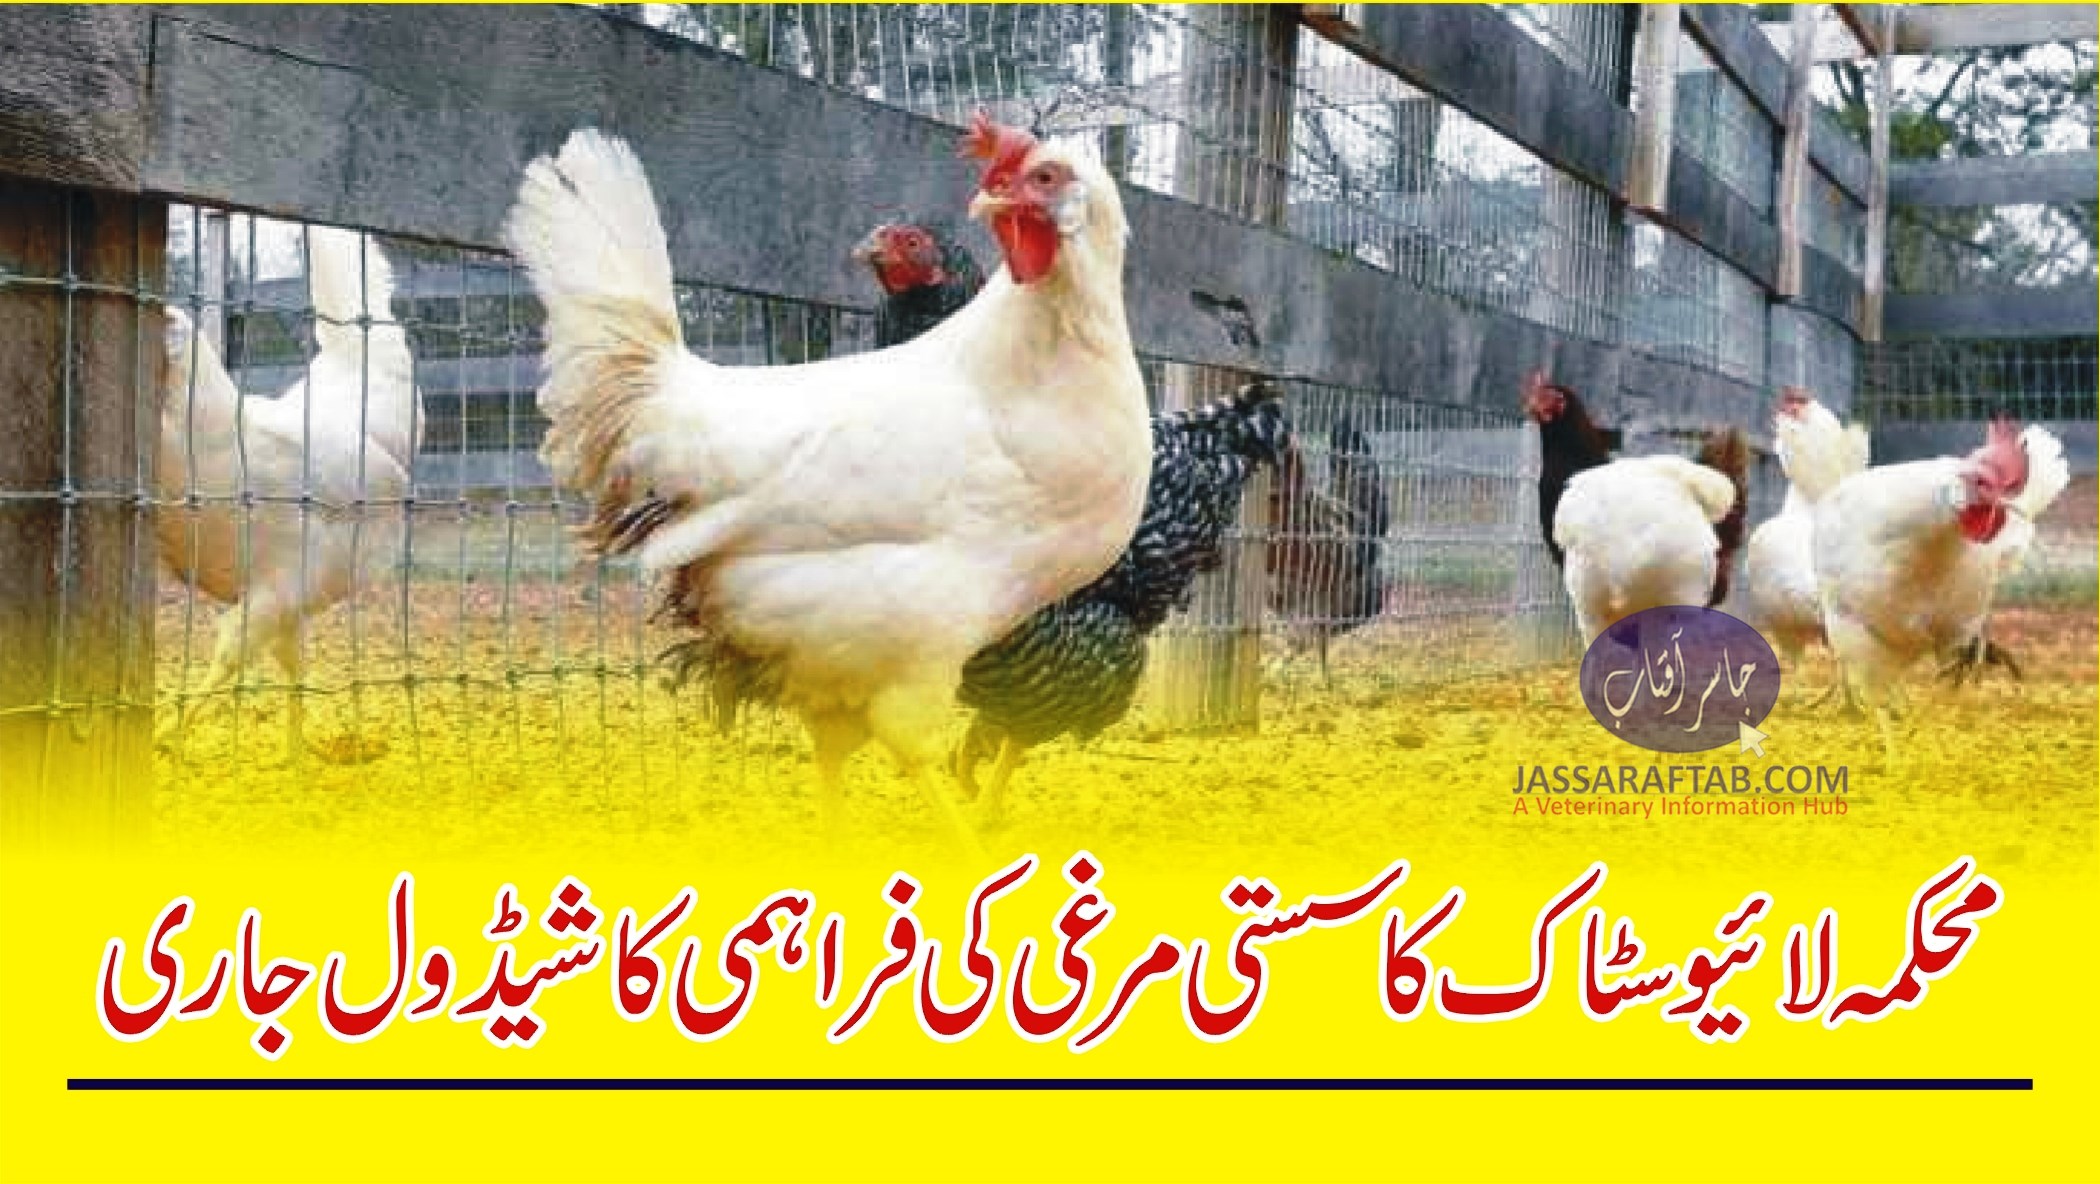 محکمہ لائیوسٹاک کا سستی مرغی کی فراہمی کا شیڈول جاری